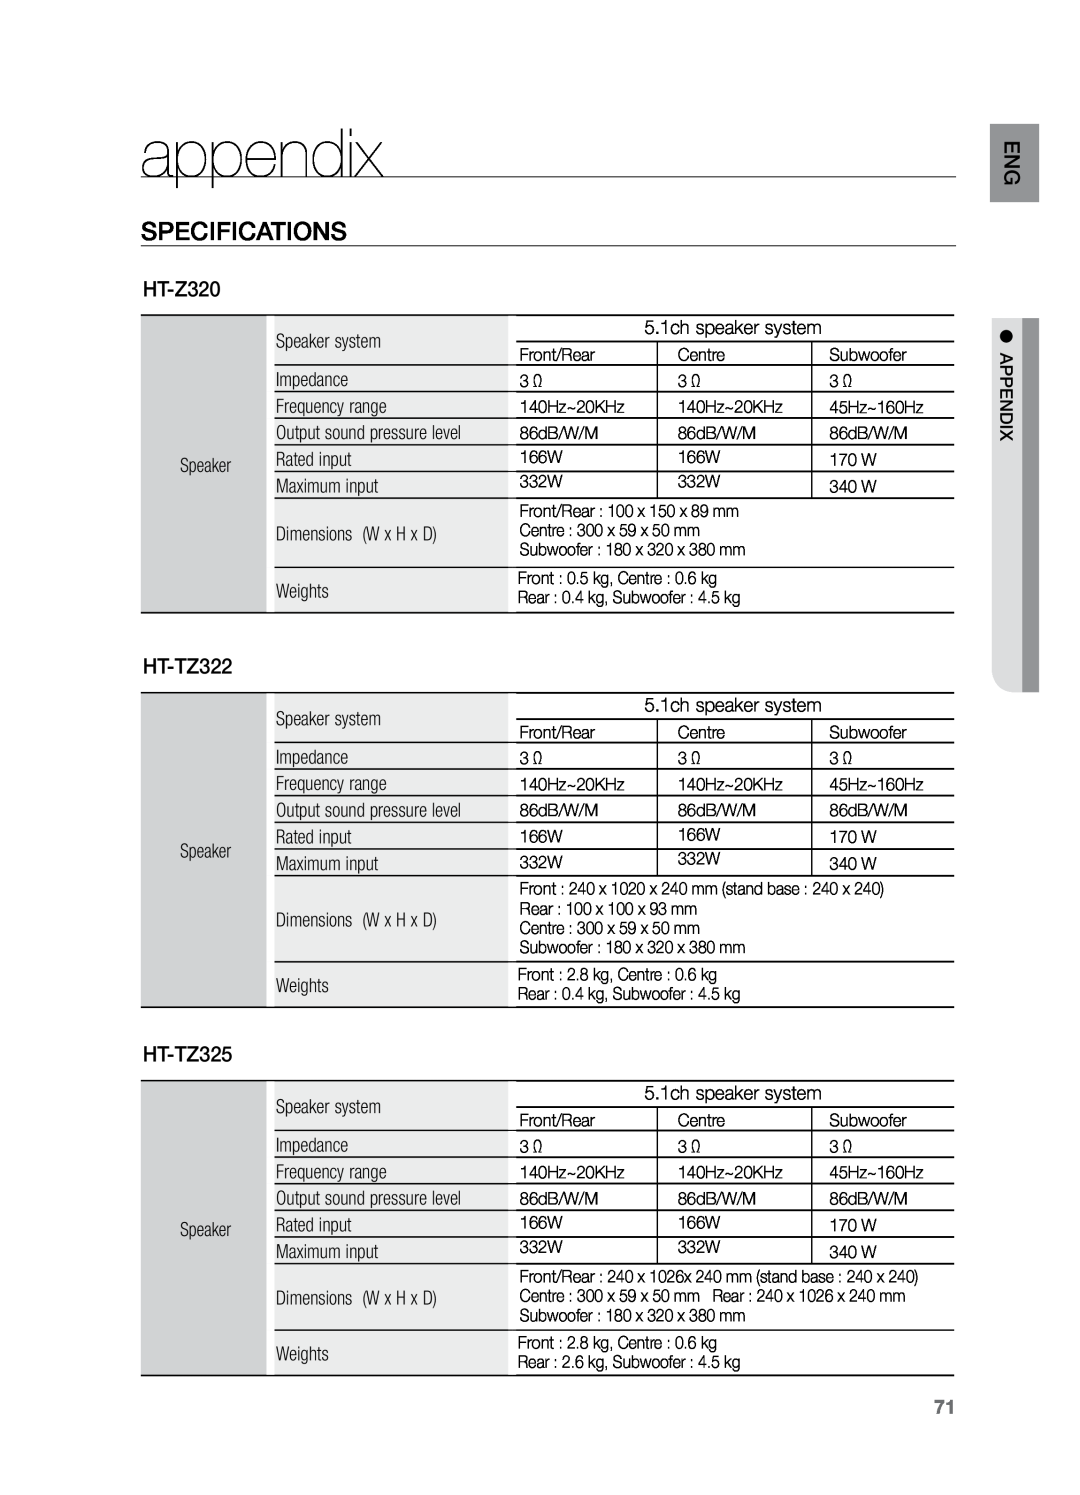 Samsung HT-TZ325T/UMG, HT-Z220T/MEA, HT-TZ325T/SIM, HT-TZ325T/FMC, HT-TZ325T/MEA appendix, Specifications, HT-Z320, HT-TZ322 